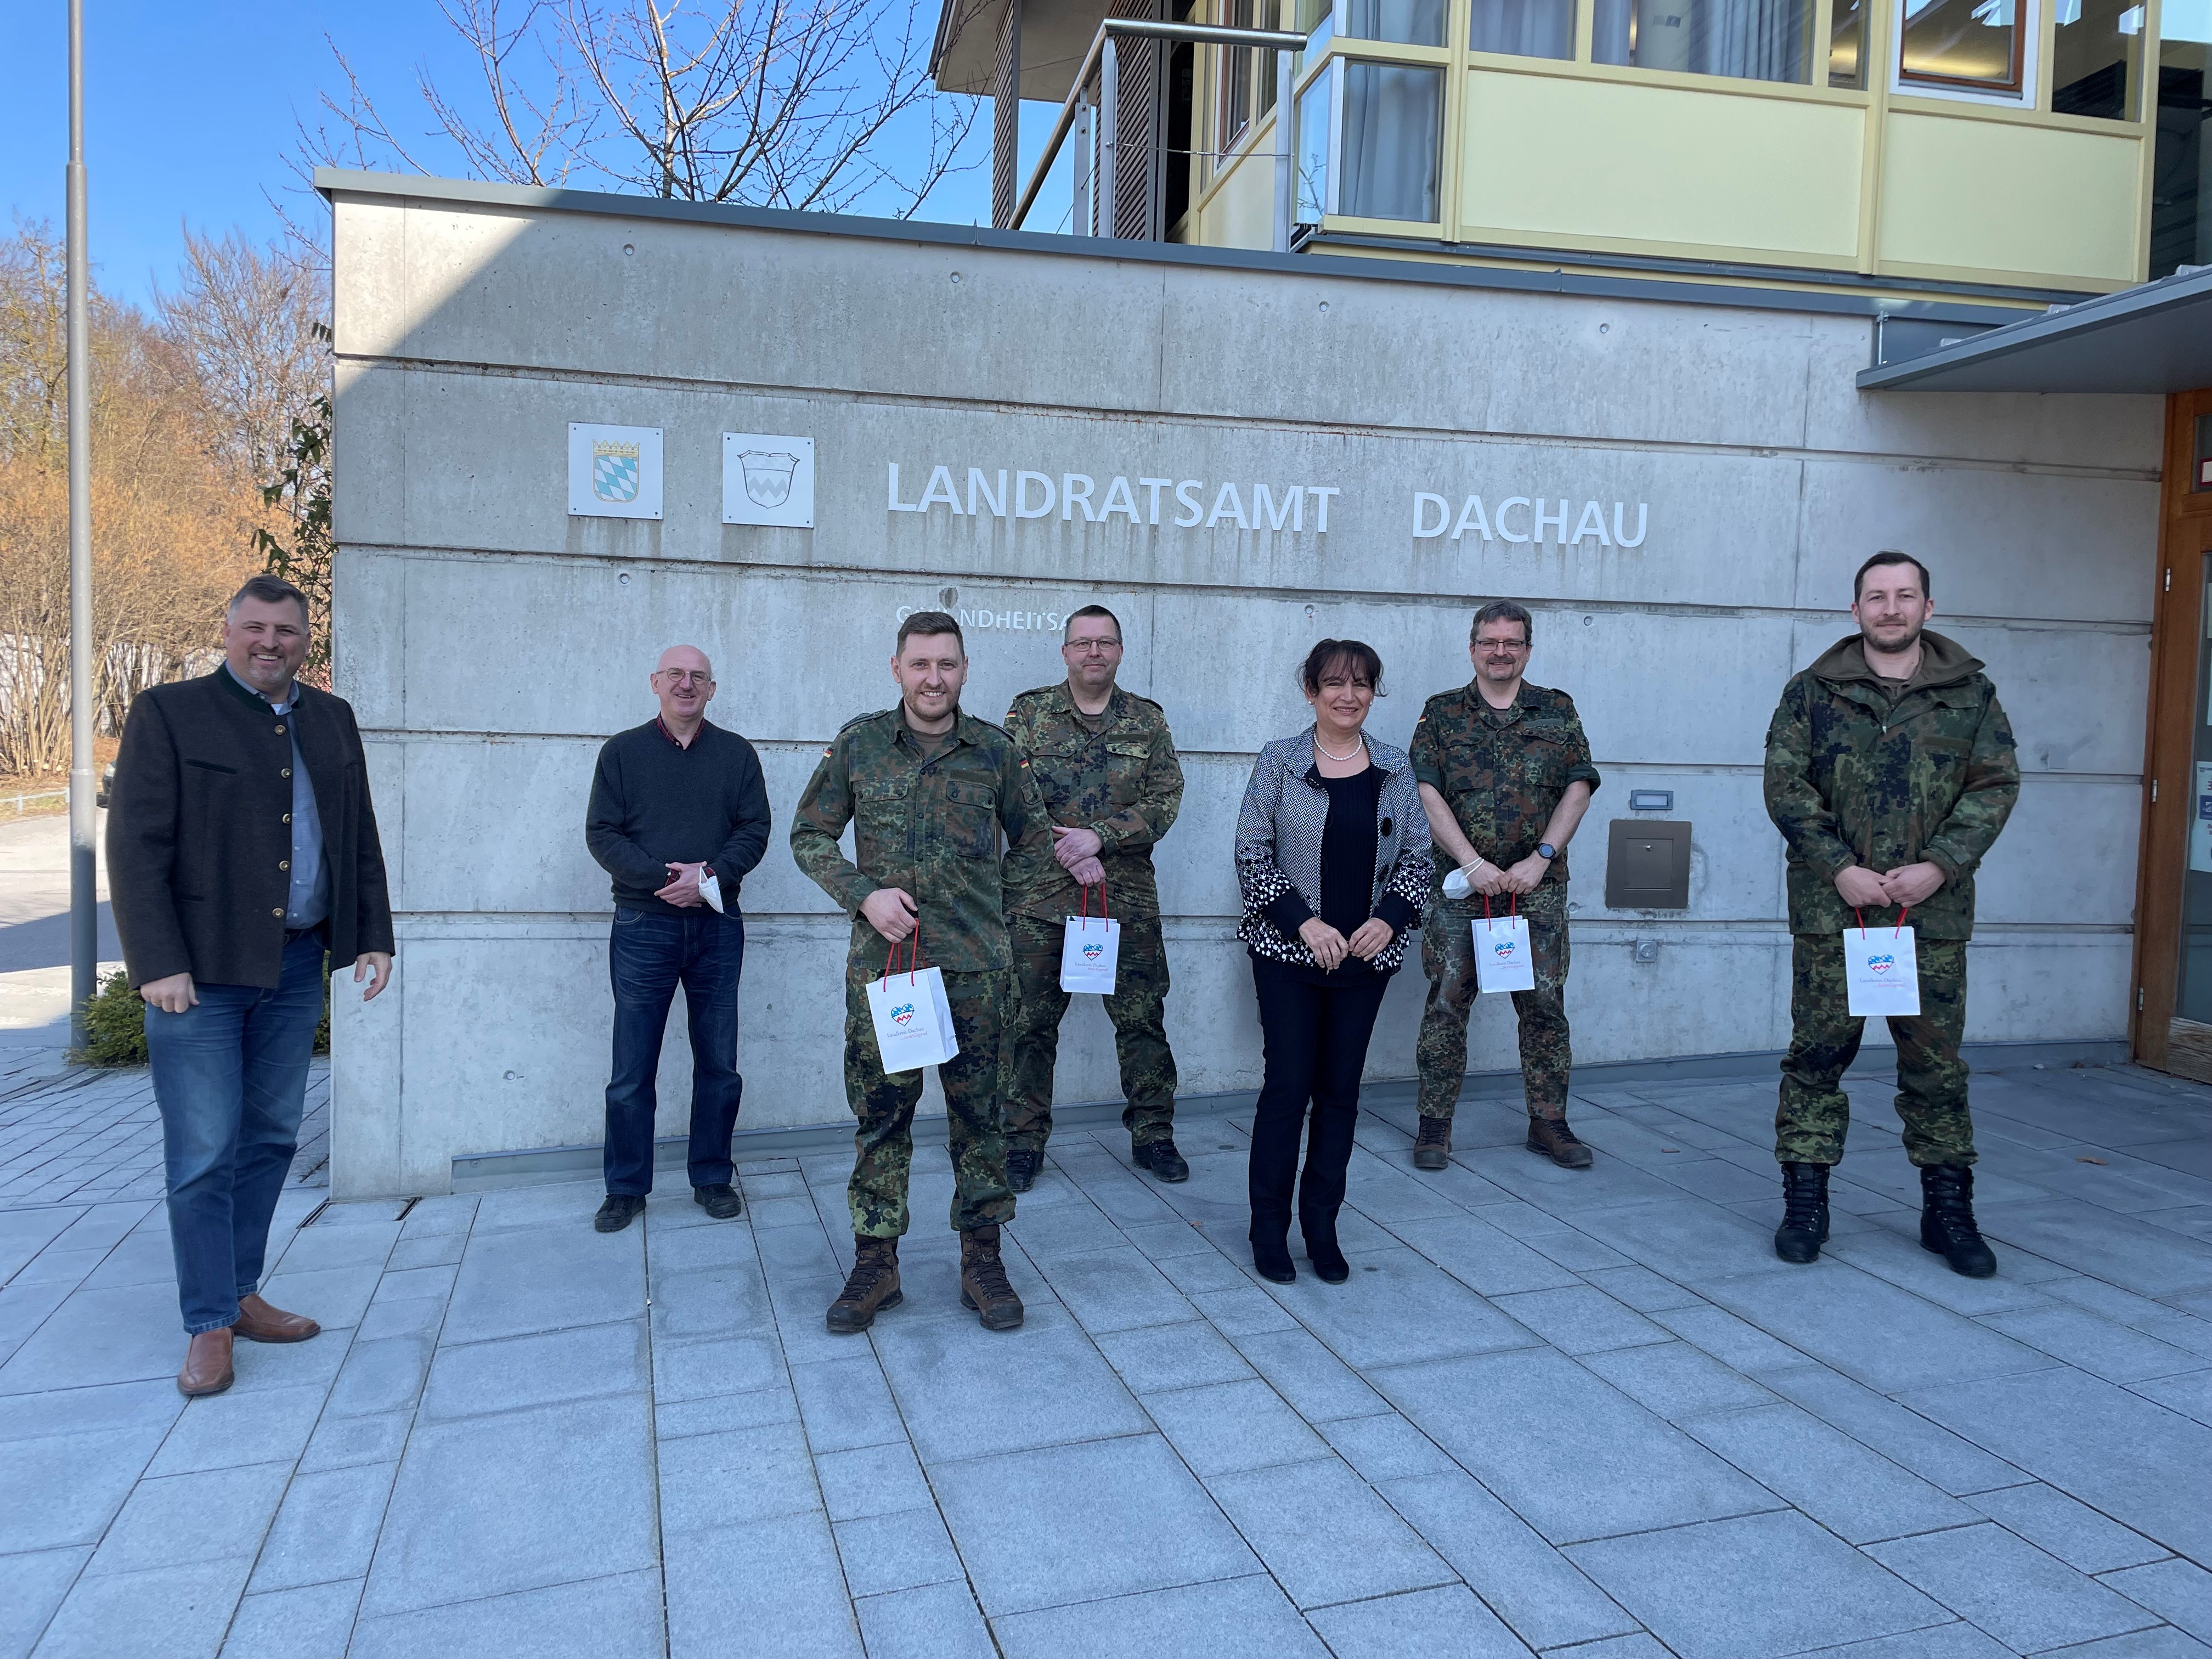 Landrat Stefan Löwl, Dr. Monika Baumgartner-Schneider, Josef Mittl bedanken sich bei den Soldaten für die Amtshilfe